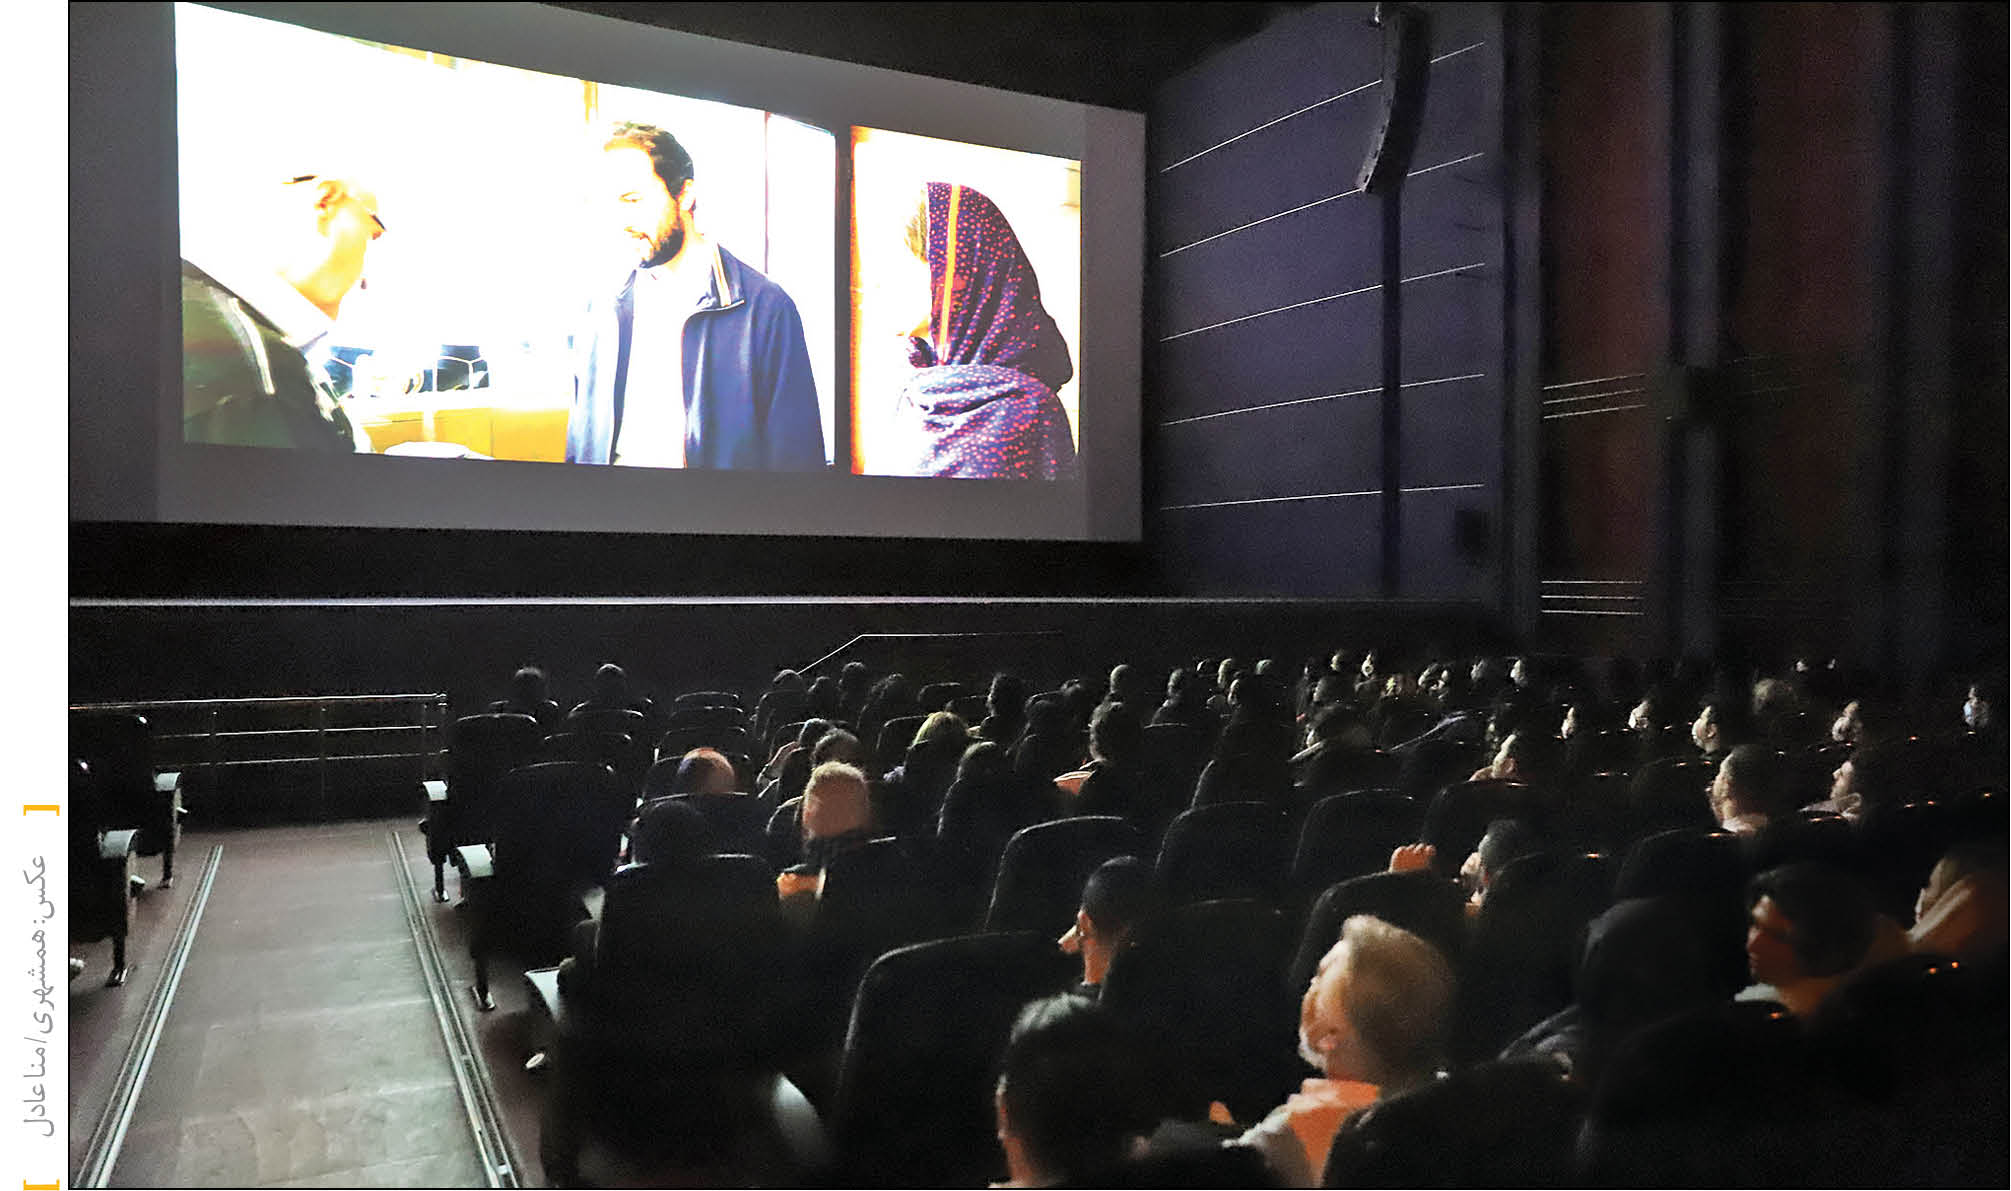 استقبال تماشاچیان از فیلم های در حال اکران، بار دیگر رونق را به سالن‌های سینما بازگردانده است